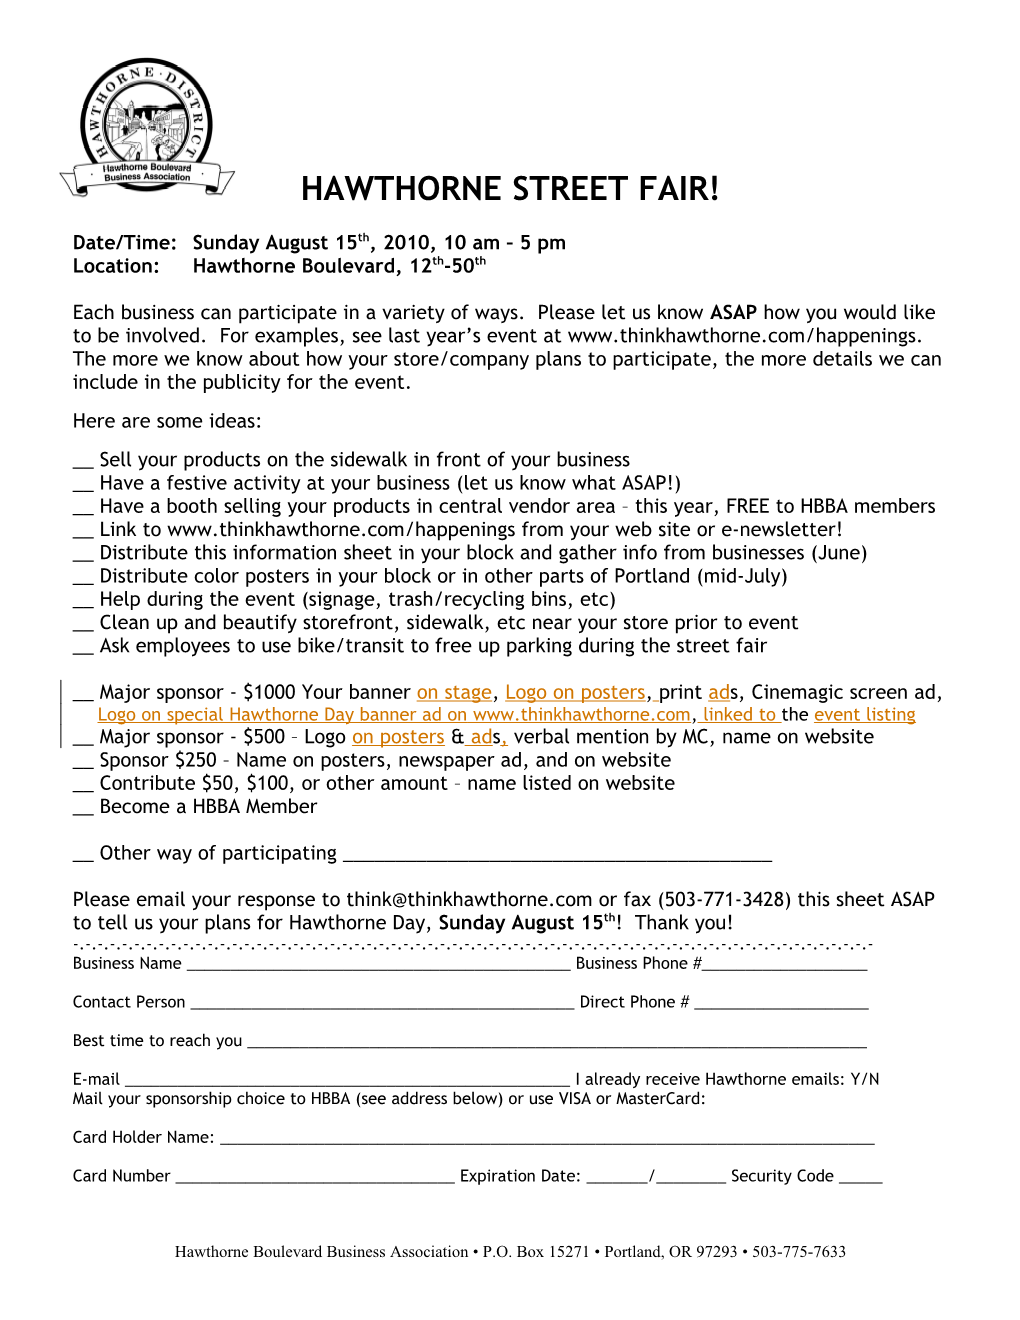 Hawthorne Street Fair Business Handout